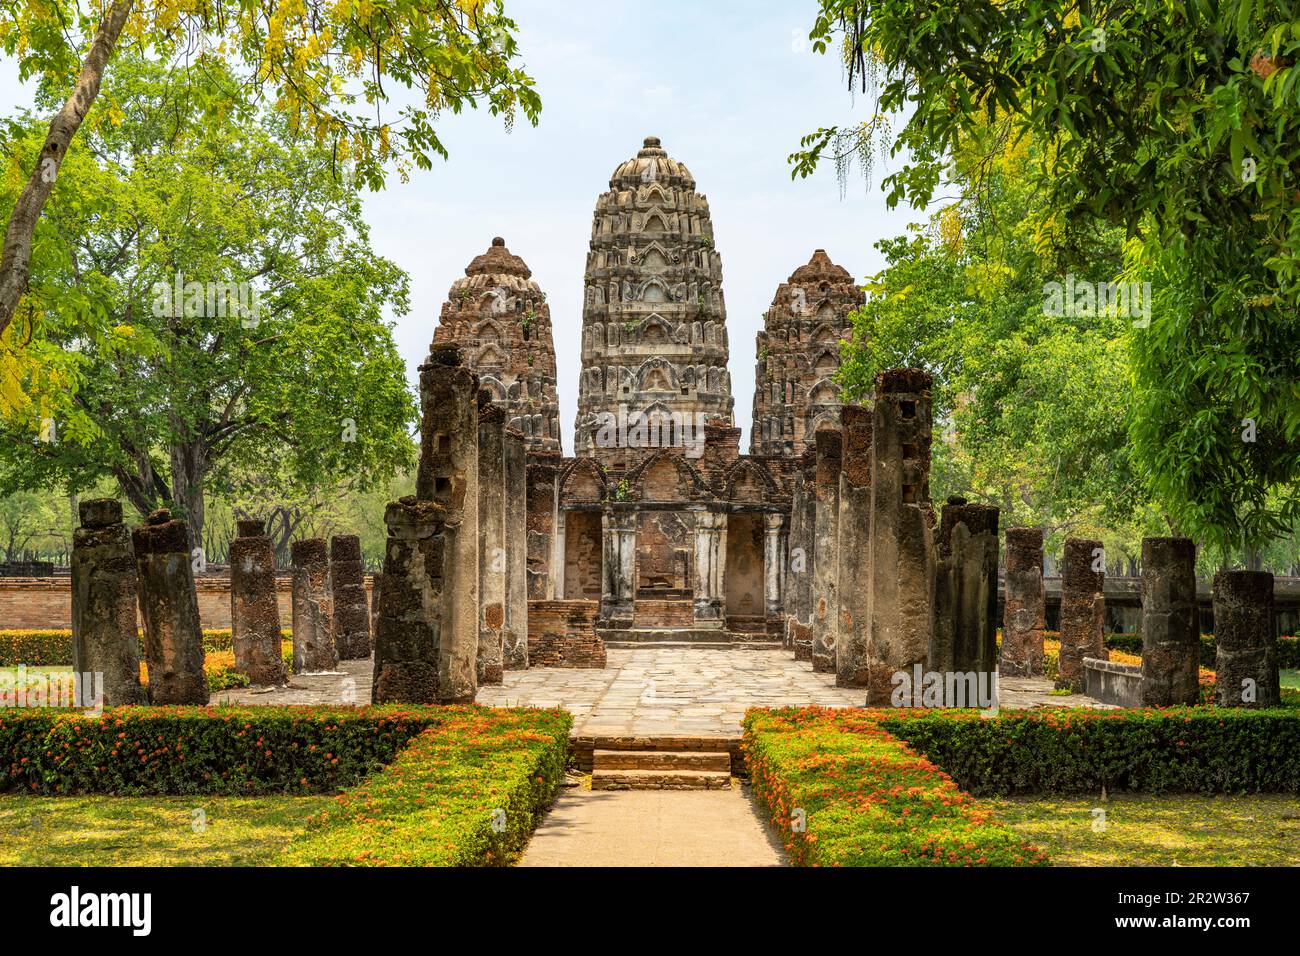 Wat Si Sawai im UNESCO Welterbe Geschichtspark Sukhothai, Thailand, Asien   |  Wat Si Sawai,  UNESCO world heritage site Sukhothai Historical Park, Su Stock Photo